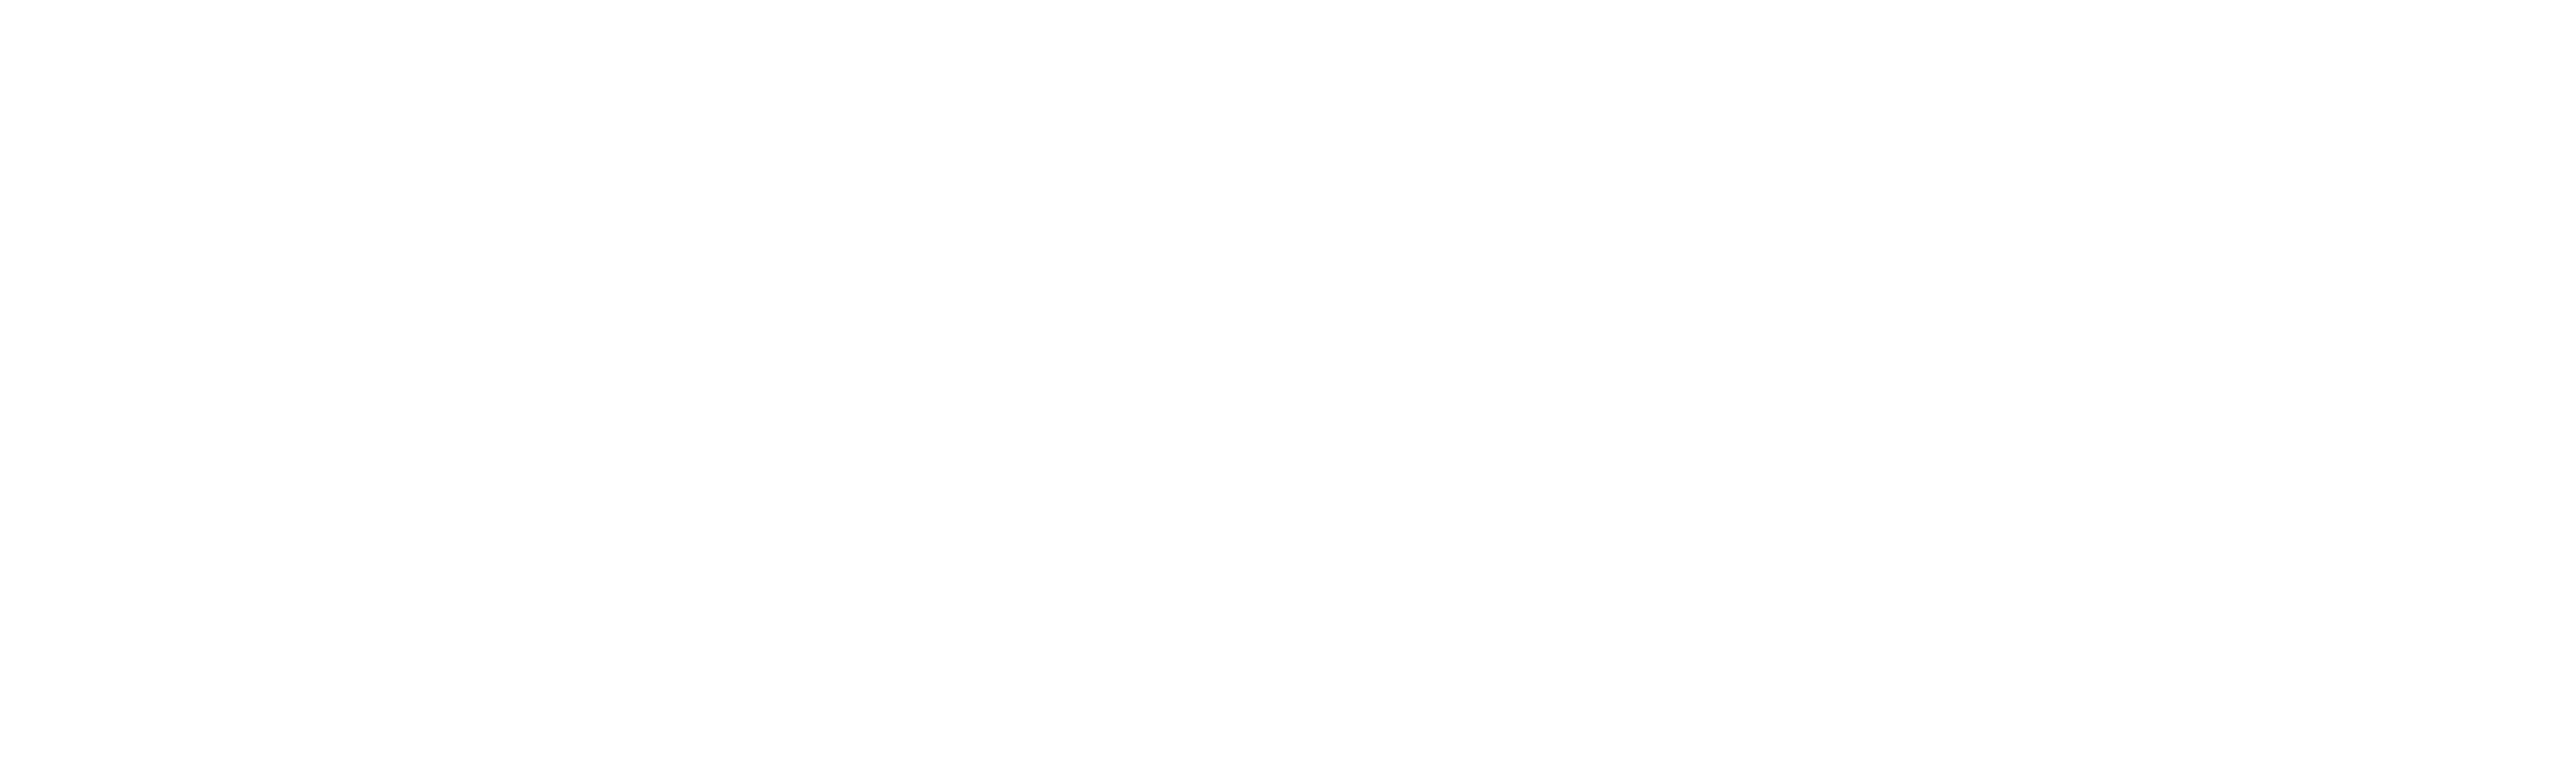 Diner App